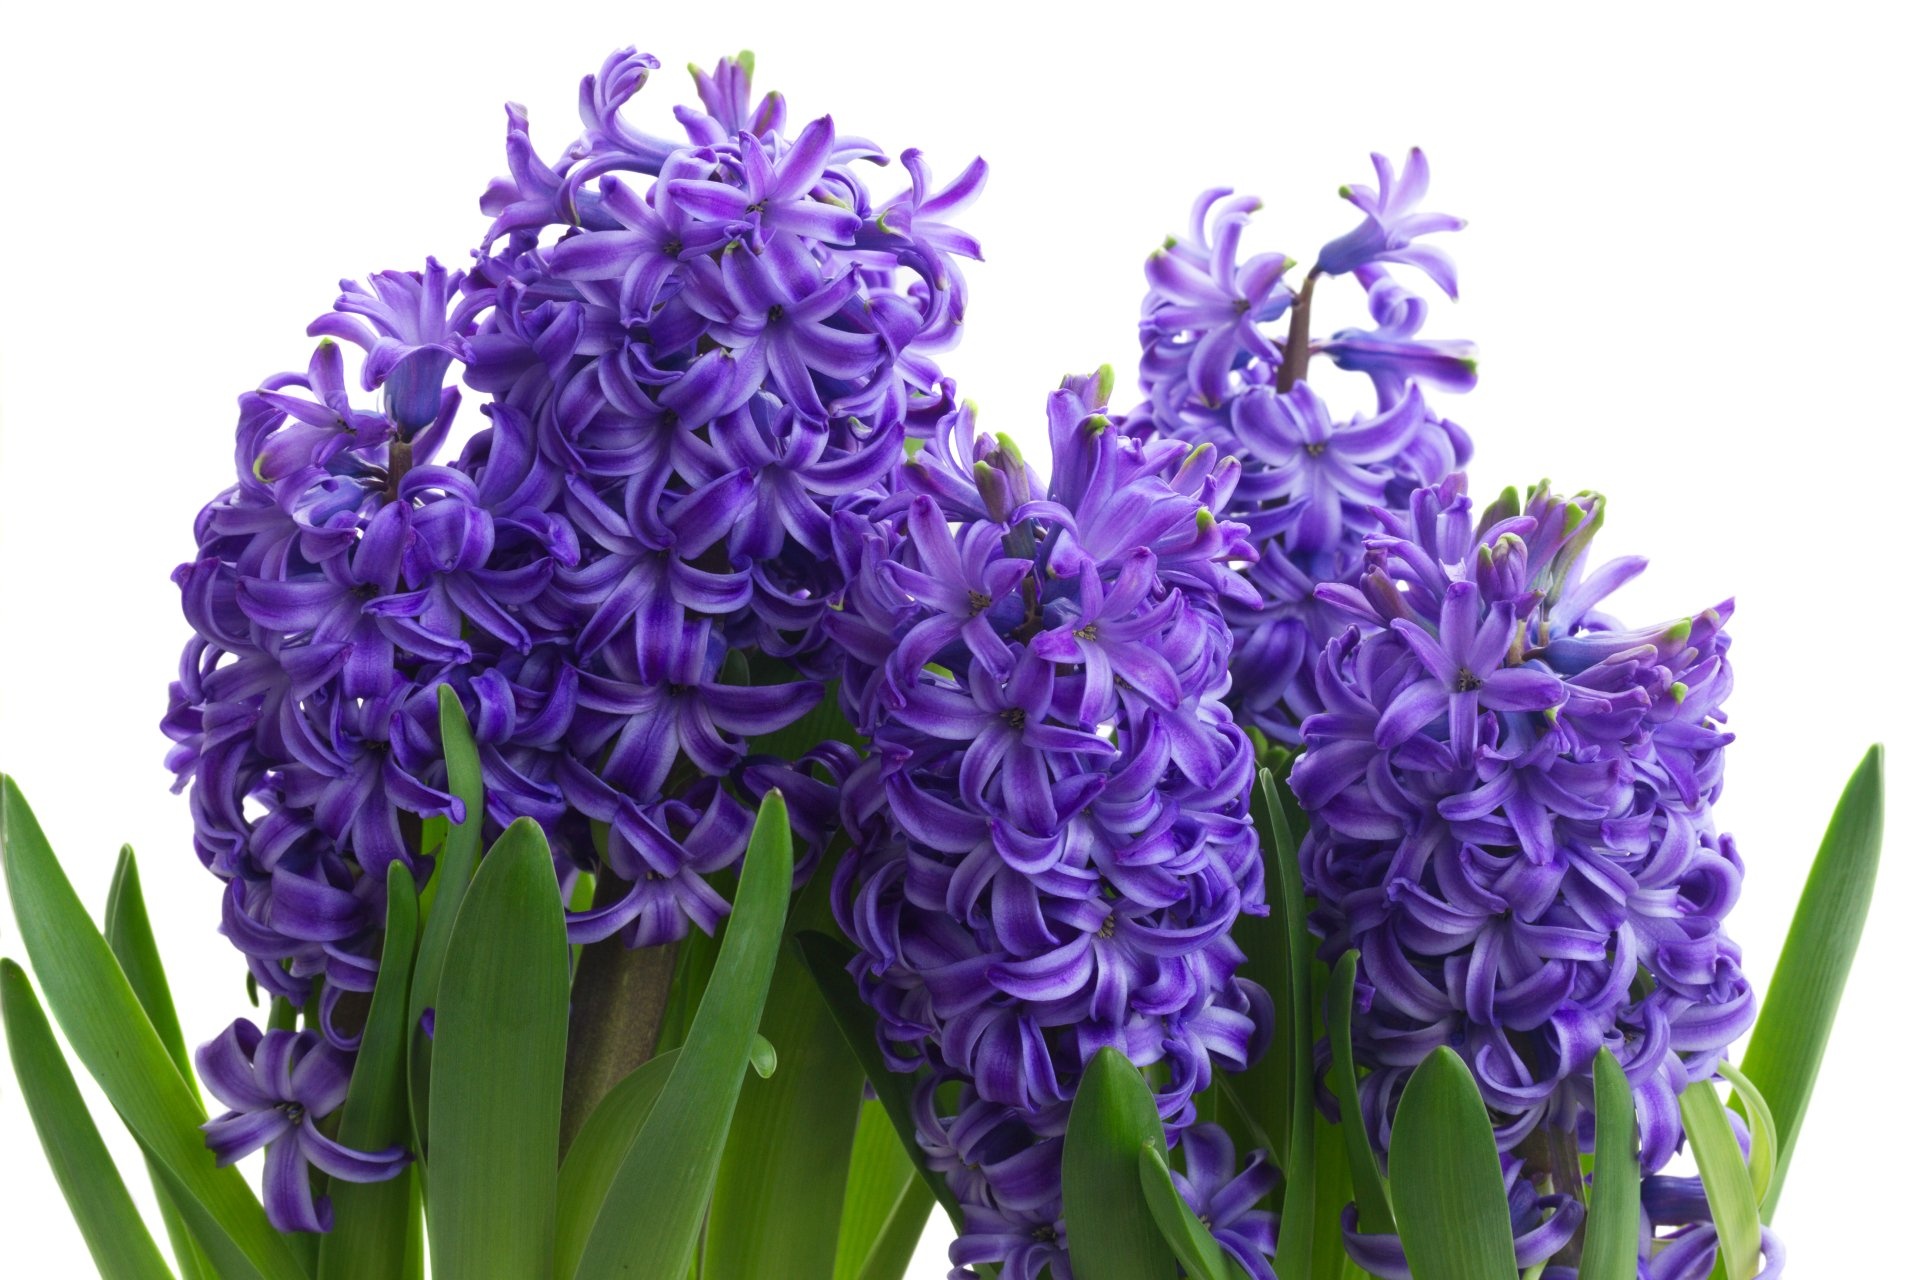 Hyacinth desktop wallpapers, HD background images, Nature's allure, Floral marvel, 1920x1280 HD Desktop